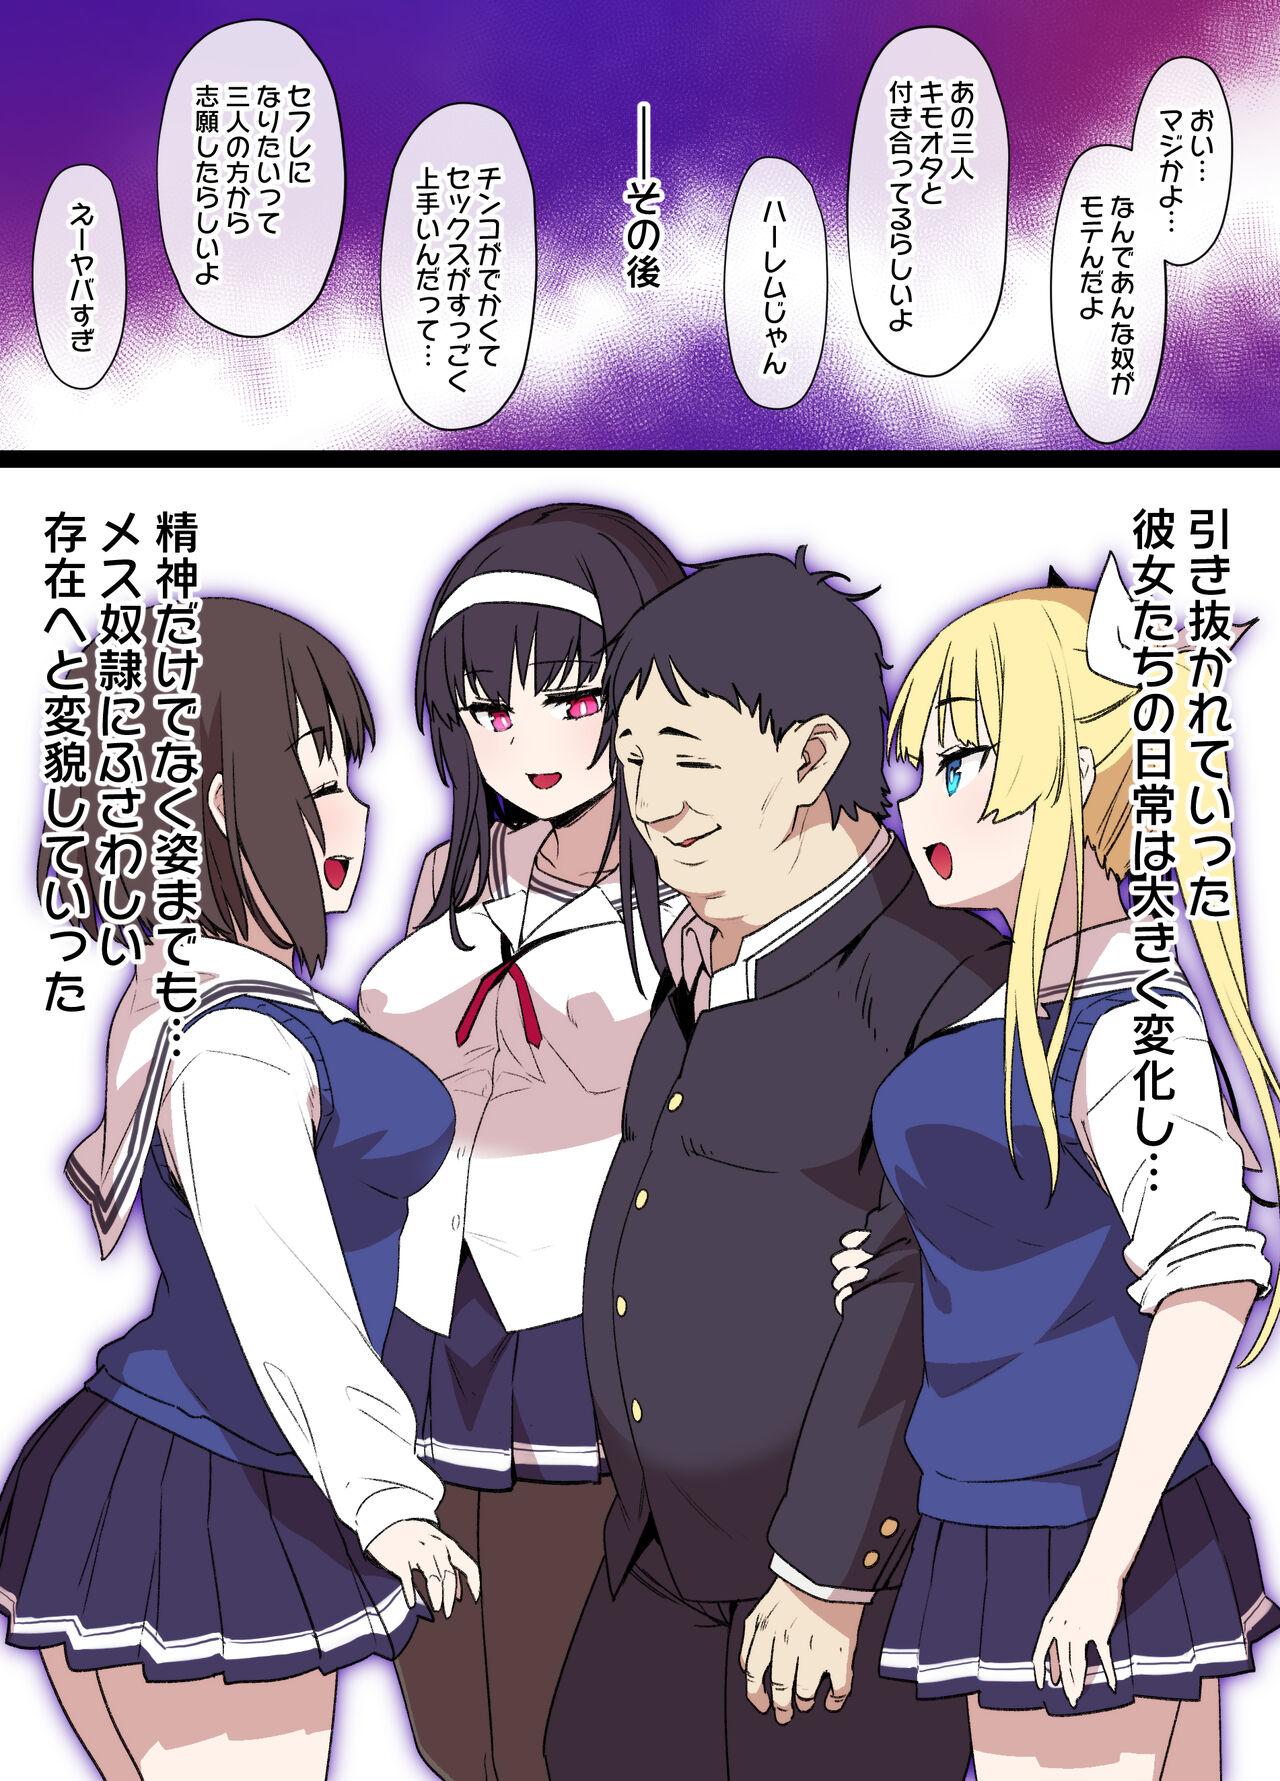 Lez [Kusayarou] Saekano NTR Manga 16P - Saimin Sennou & Bitch-ka (Saenai Heroine no Sodatekata) - Saenai heroine no sodatekata Menage - Page 10